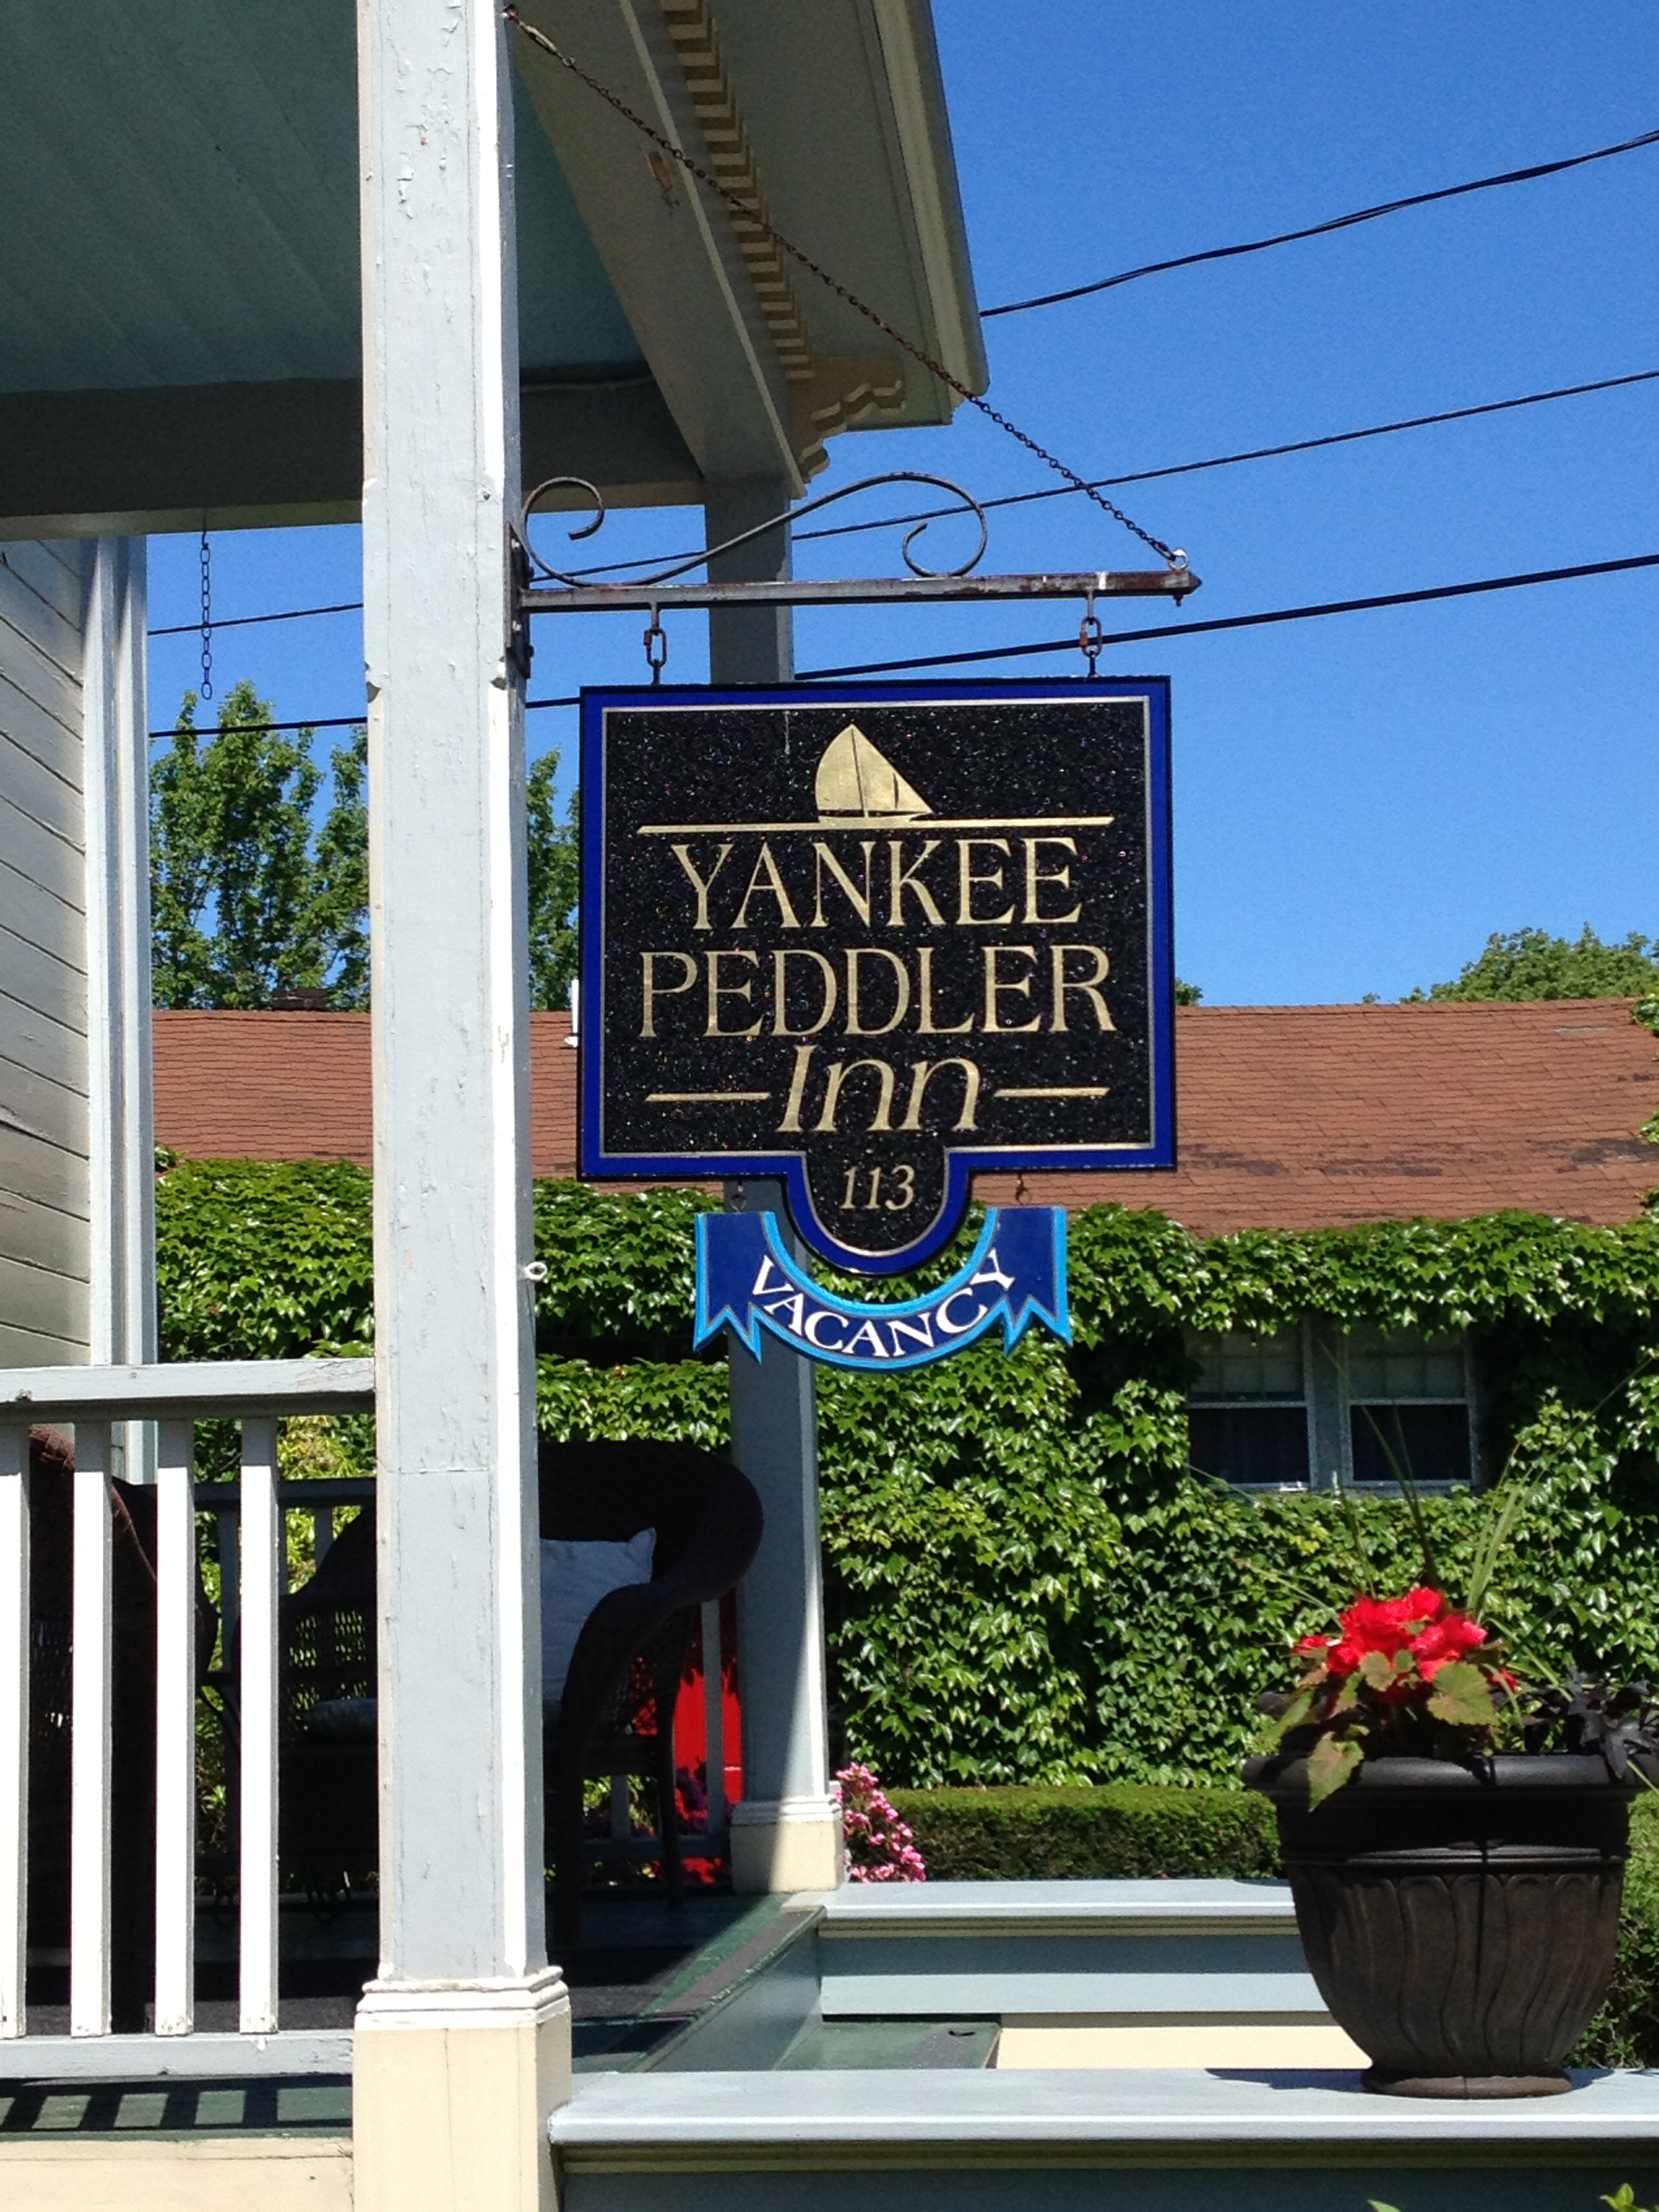 Yankee-Peddler-Inn-sign.jpg